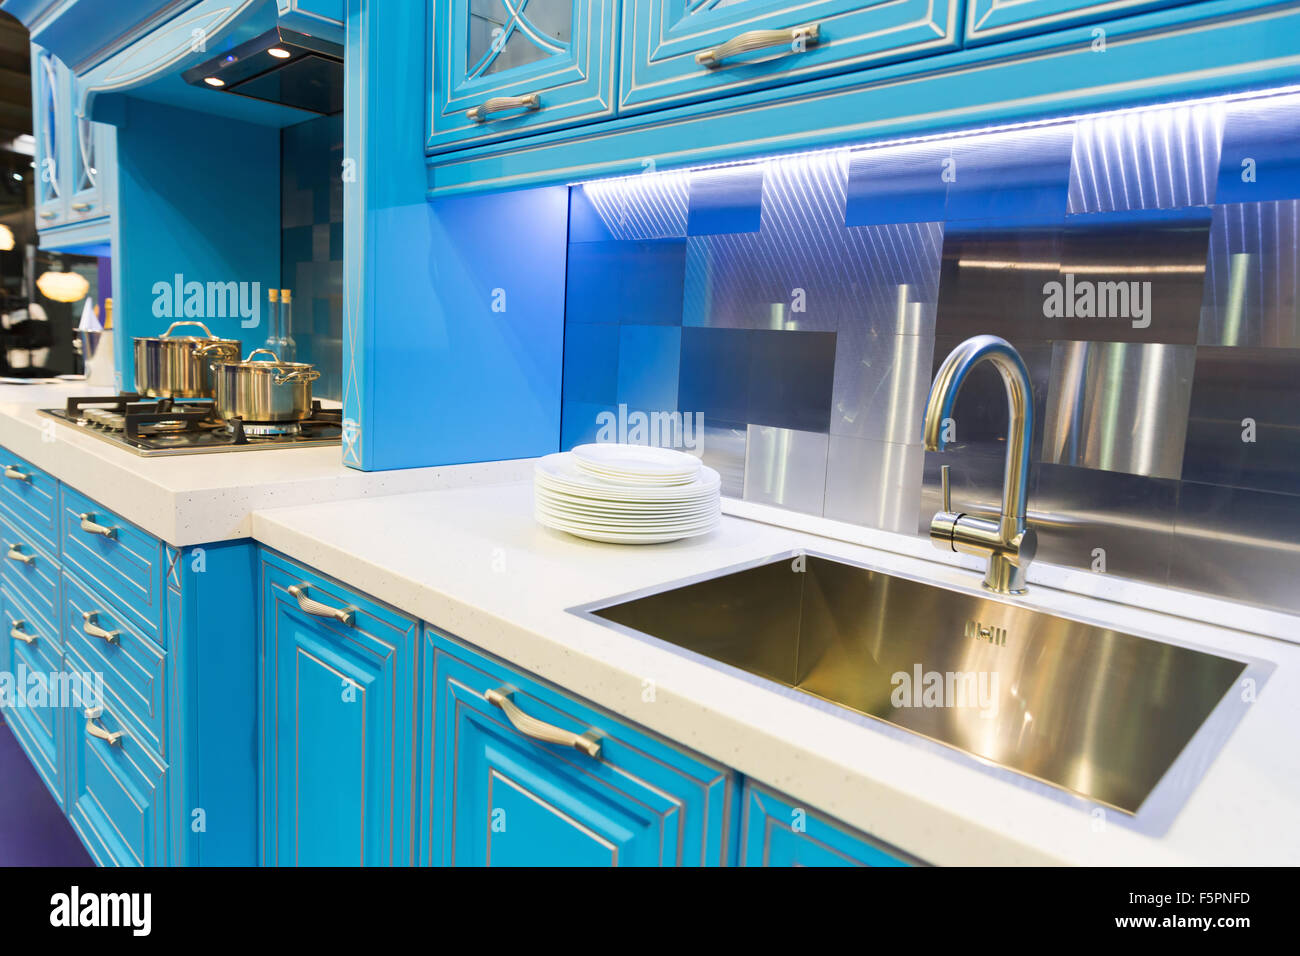 Cuisine en bois design intérieur bleu style high tech Banque D'Images